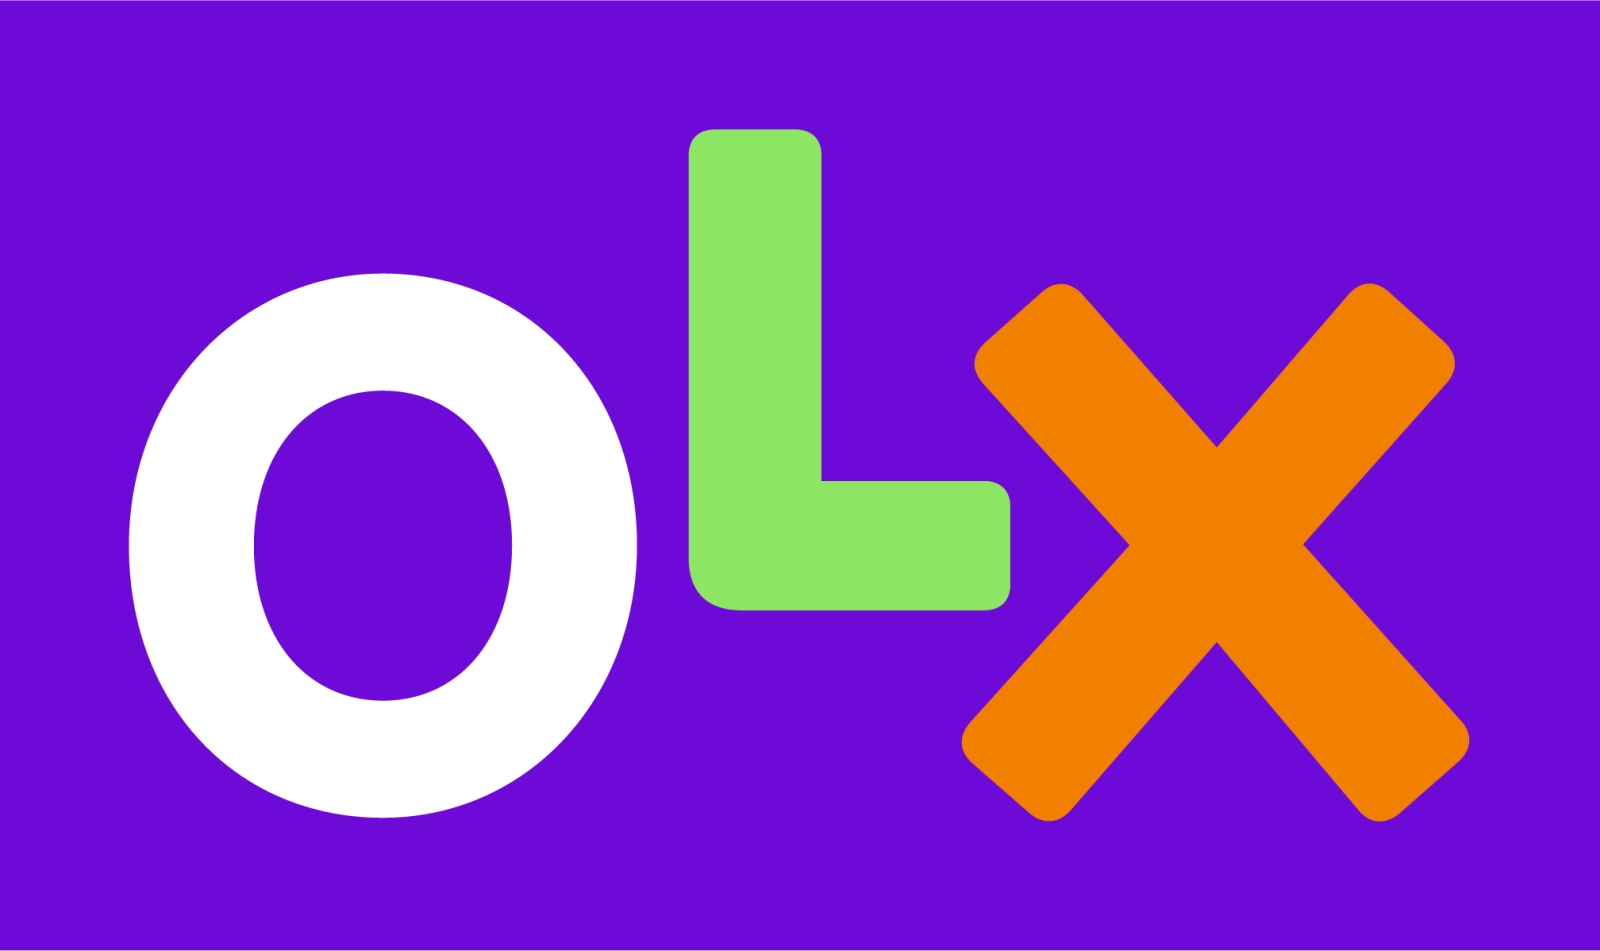 OLX annoncerer gratis forsendelse for ordrer i hele december måned